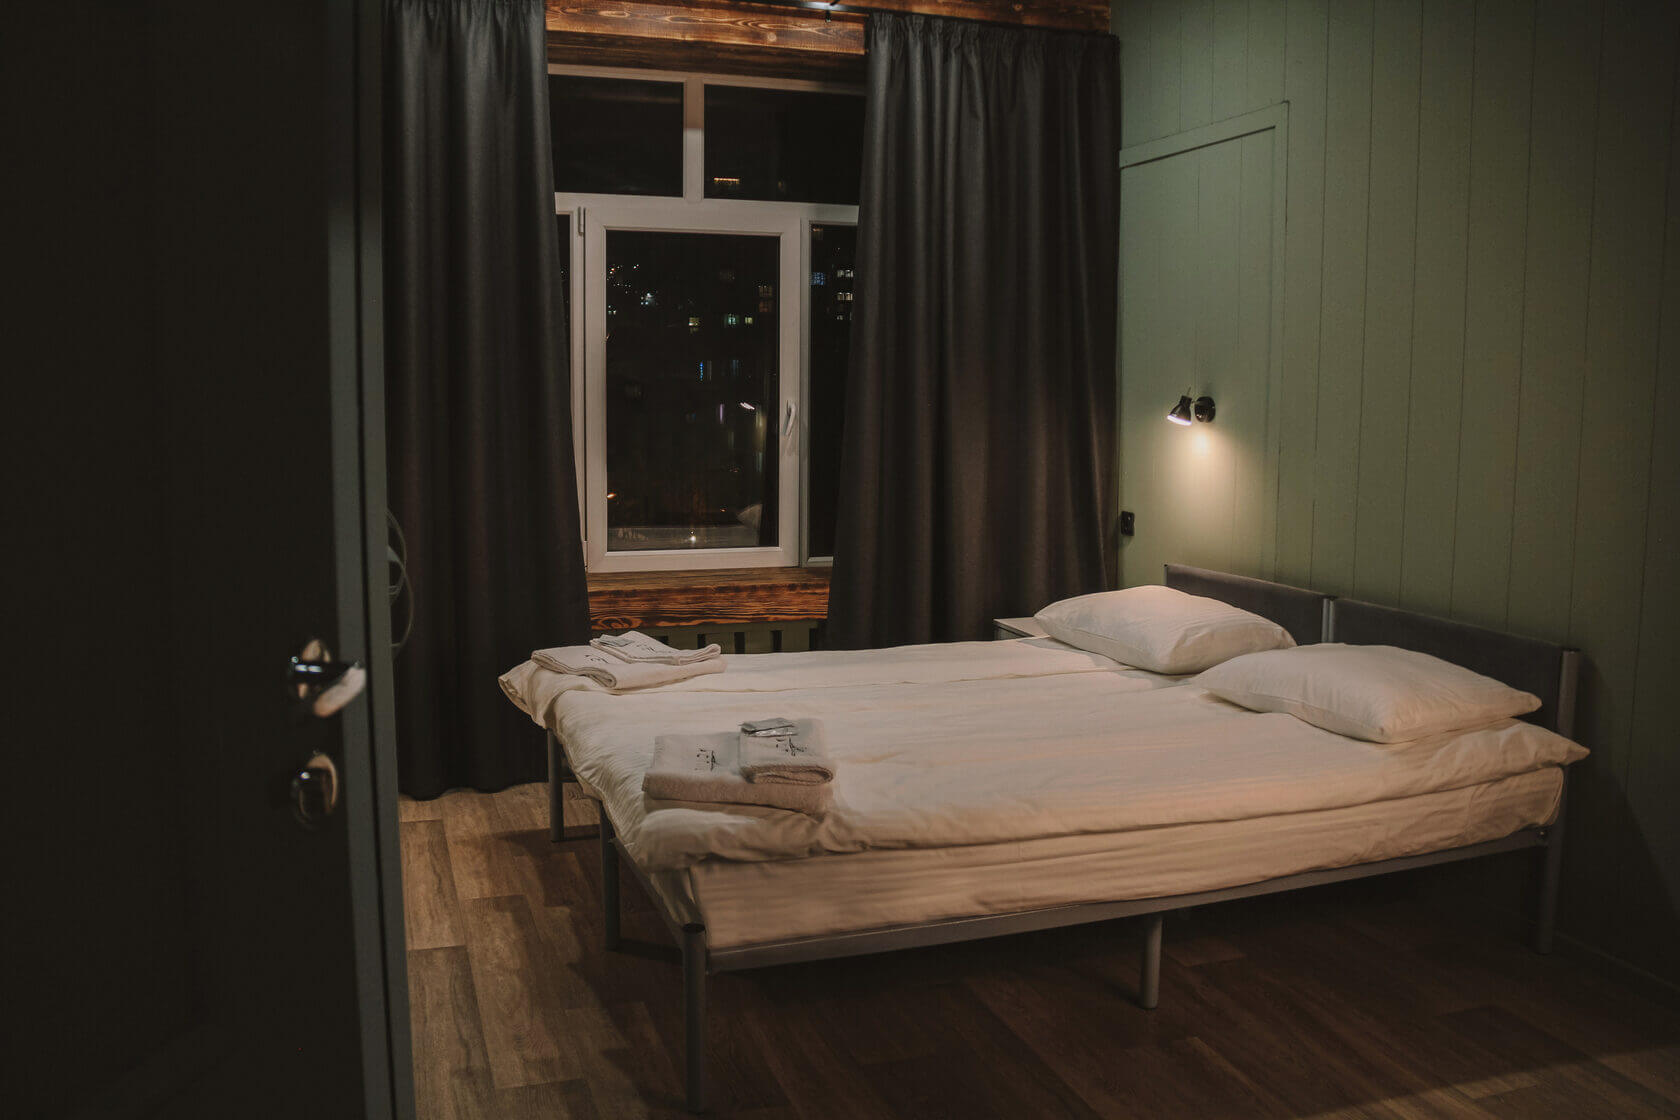 Пример номера: застеленная белоснежным бельем кровать ждет гостей.